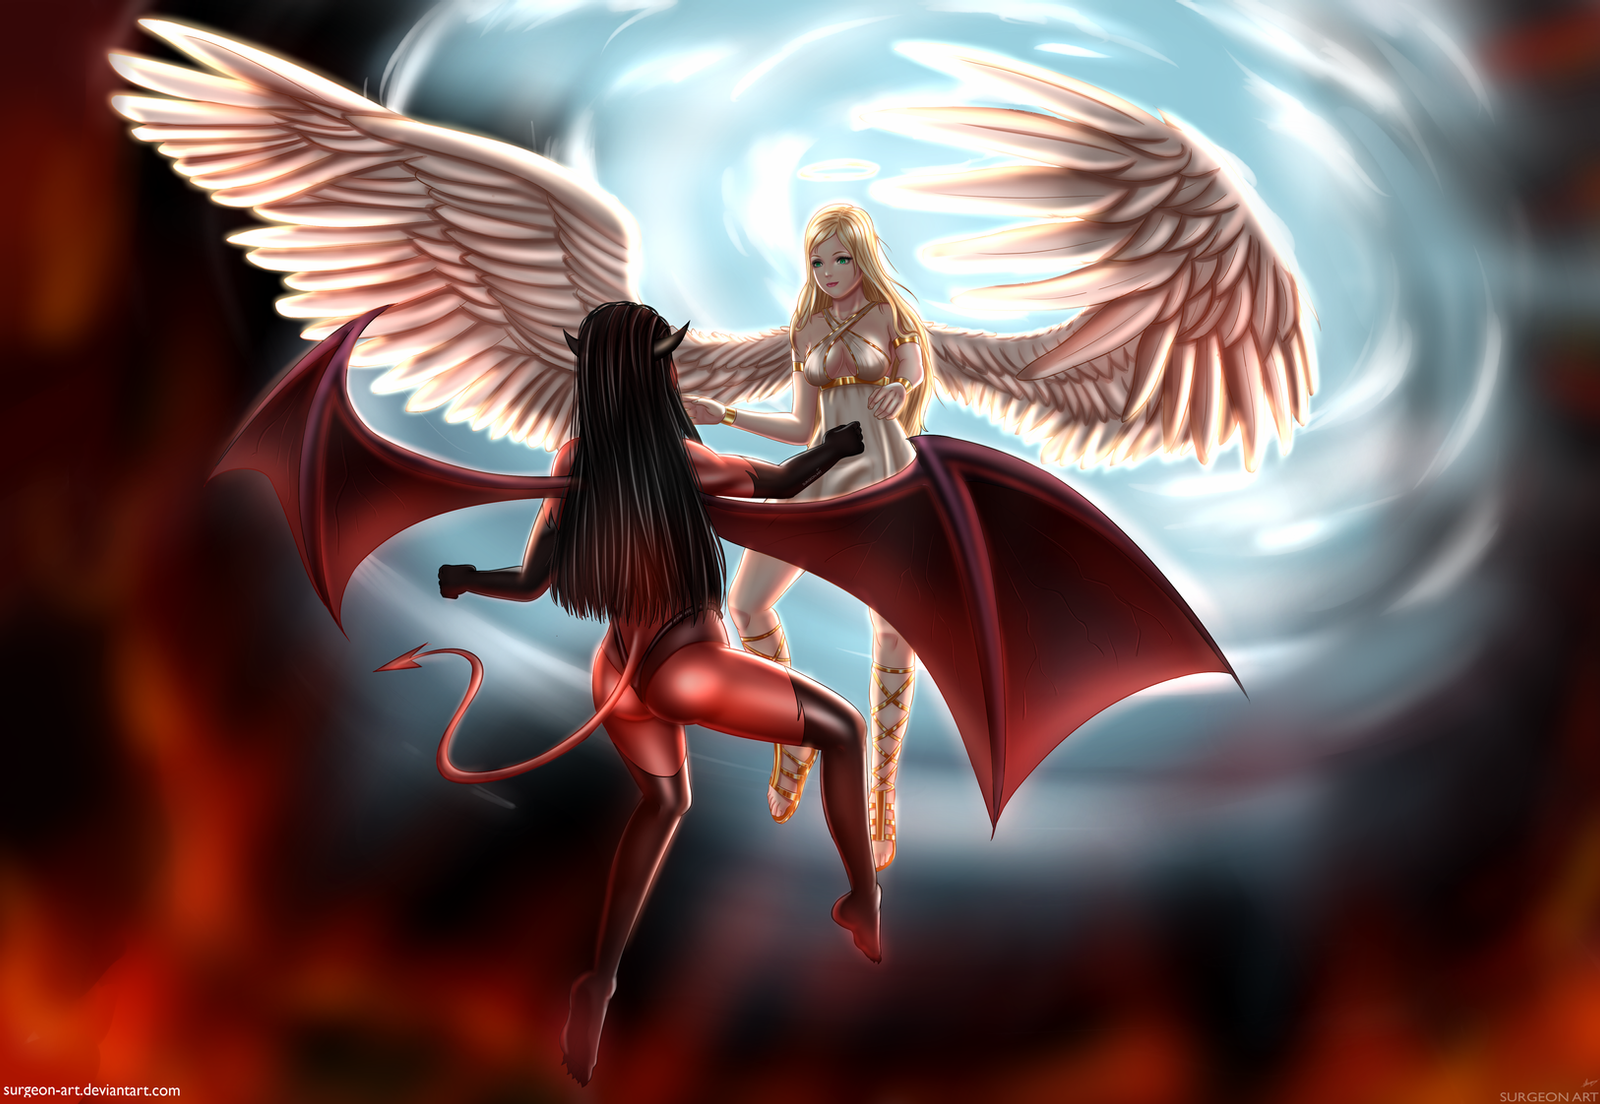 Ангел и демон Джейден. Полуангел полудемон. Ангел в танце с демоном дримкаст